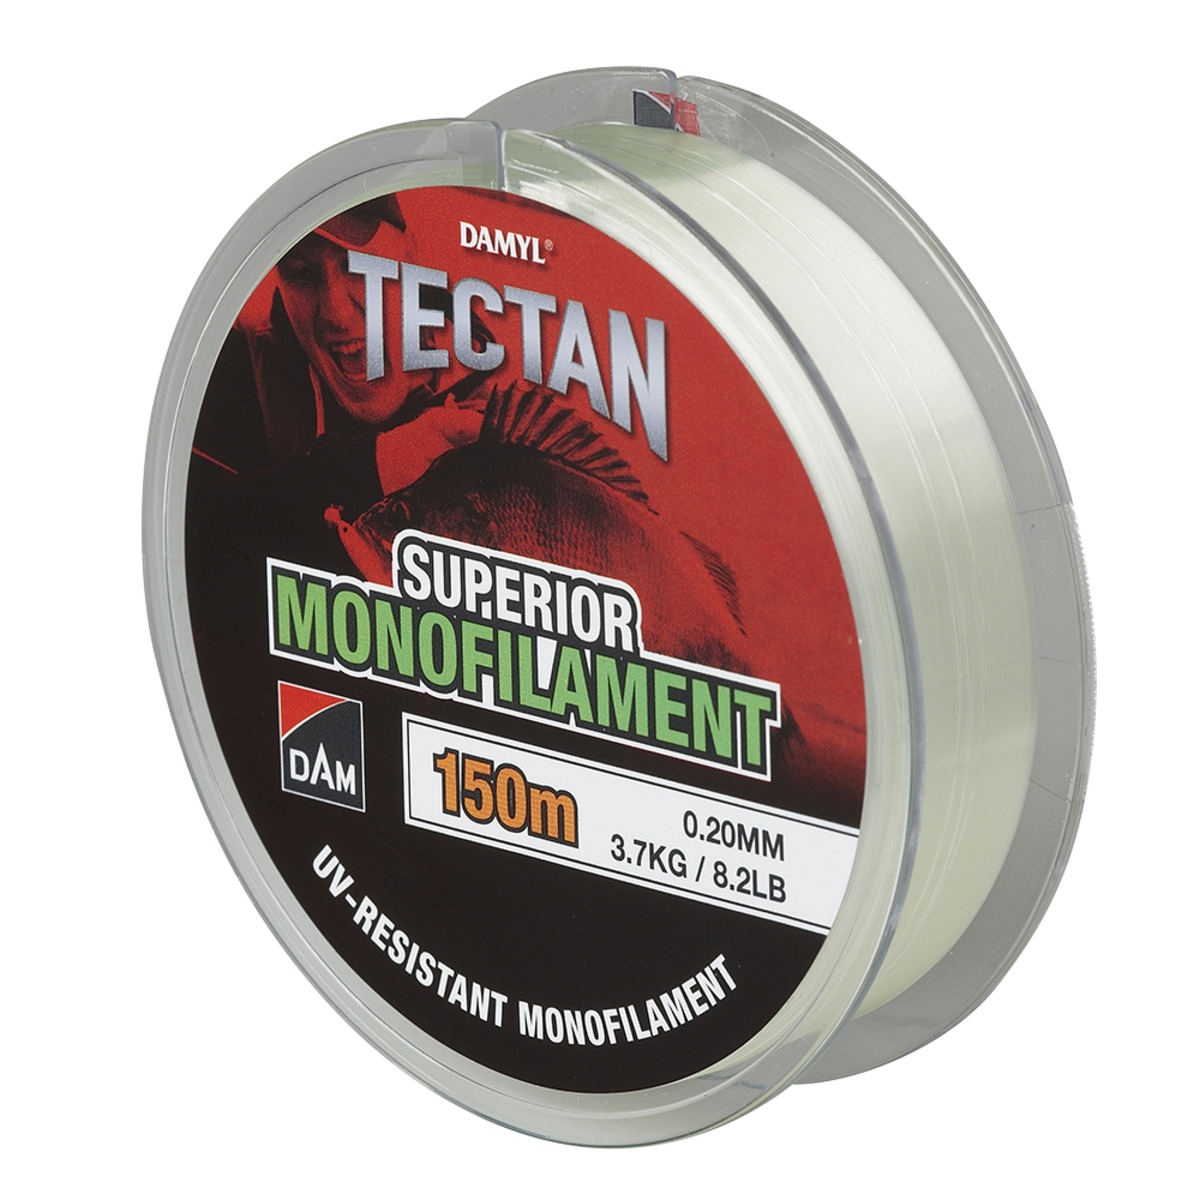 Dam Tectan Superior 150m - 0.25MM 5.8KG 12.9LBS GREEN TRANSPARANT